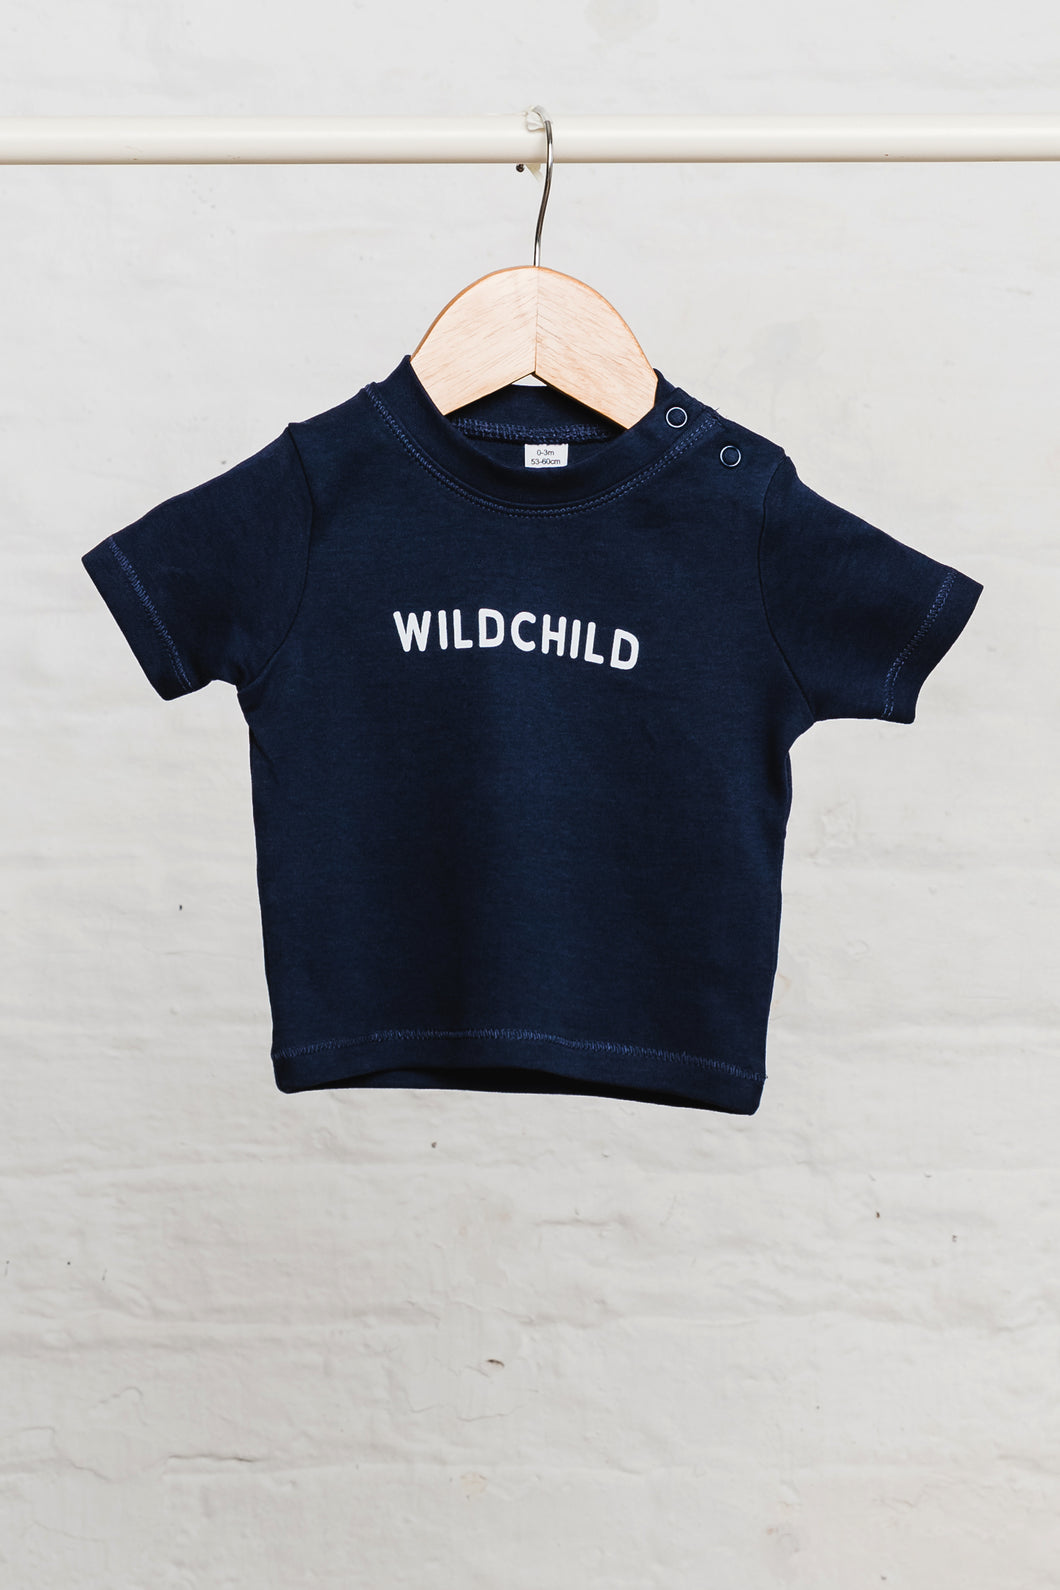 Wildchild  baby t-shirt